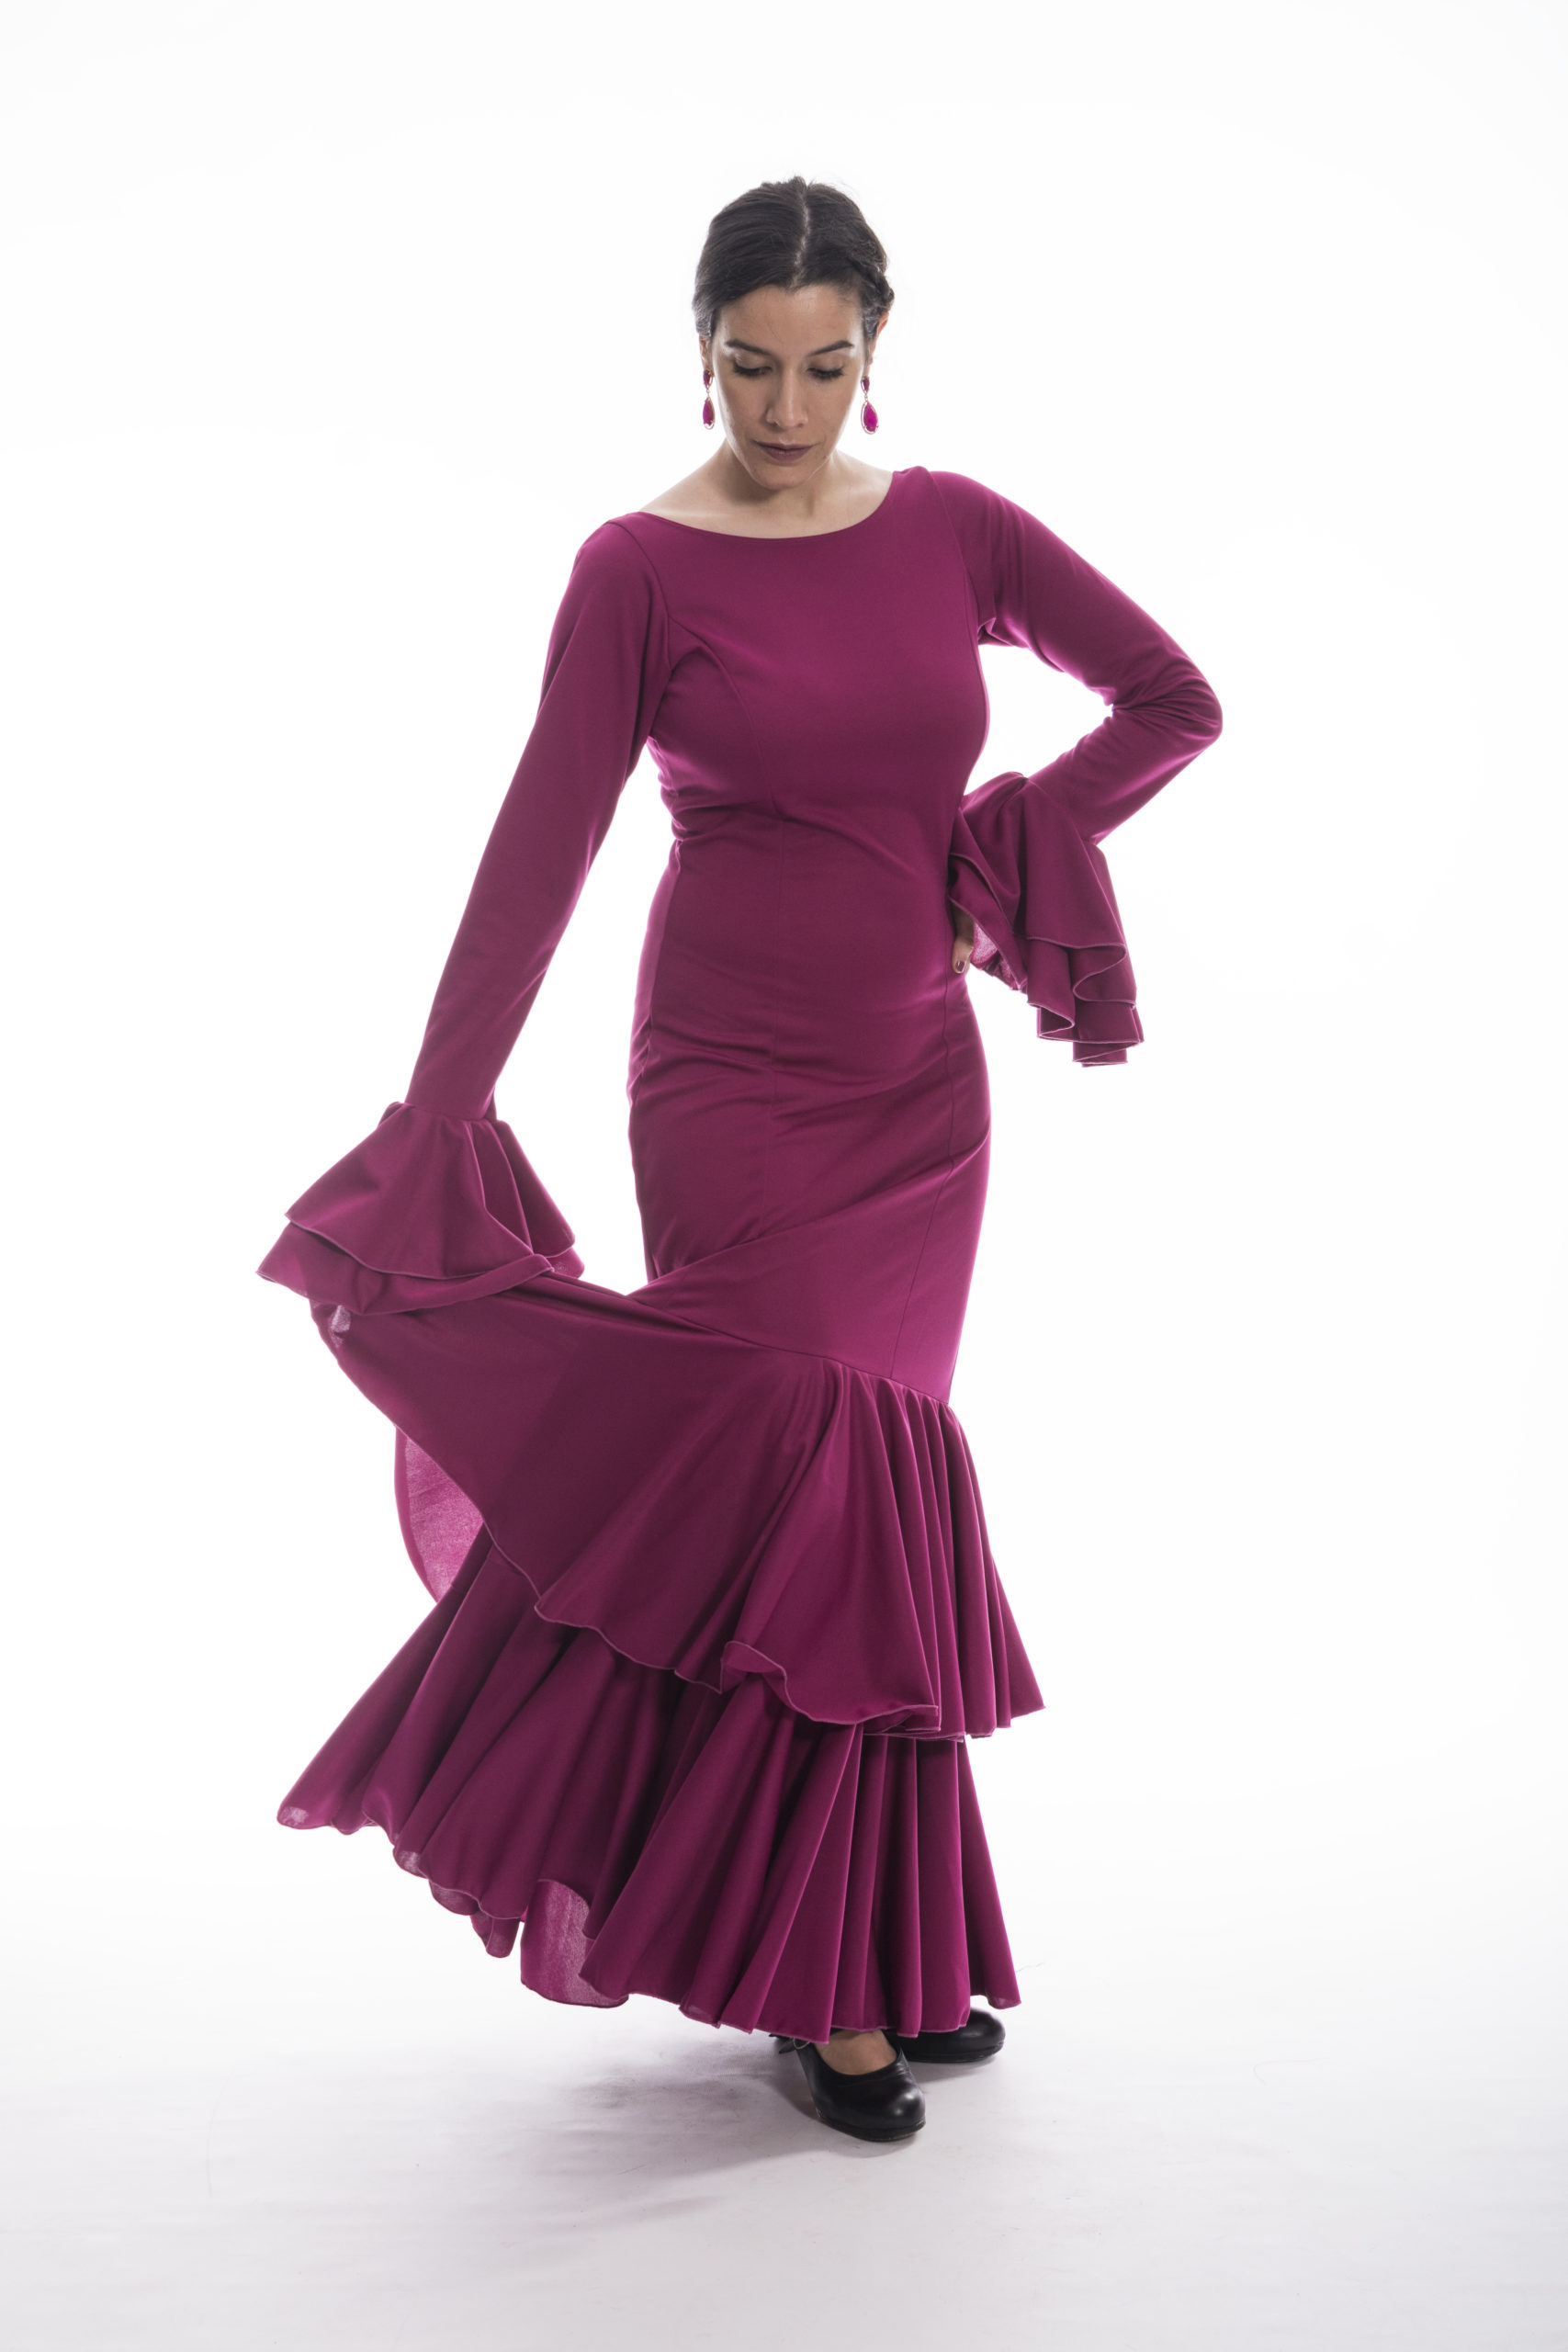 Vestido de ensayo entallado para baile flamenco 